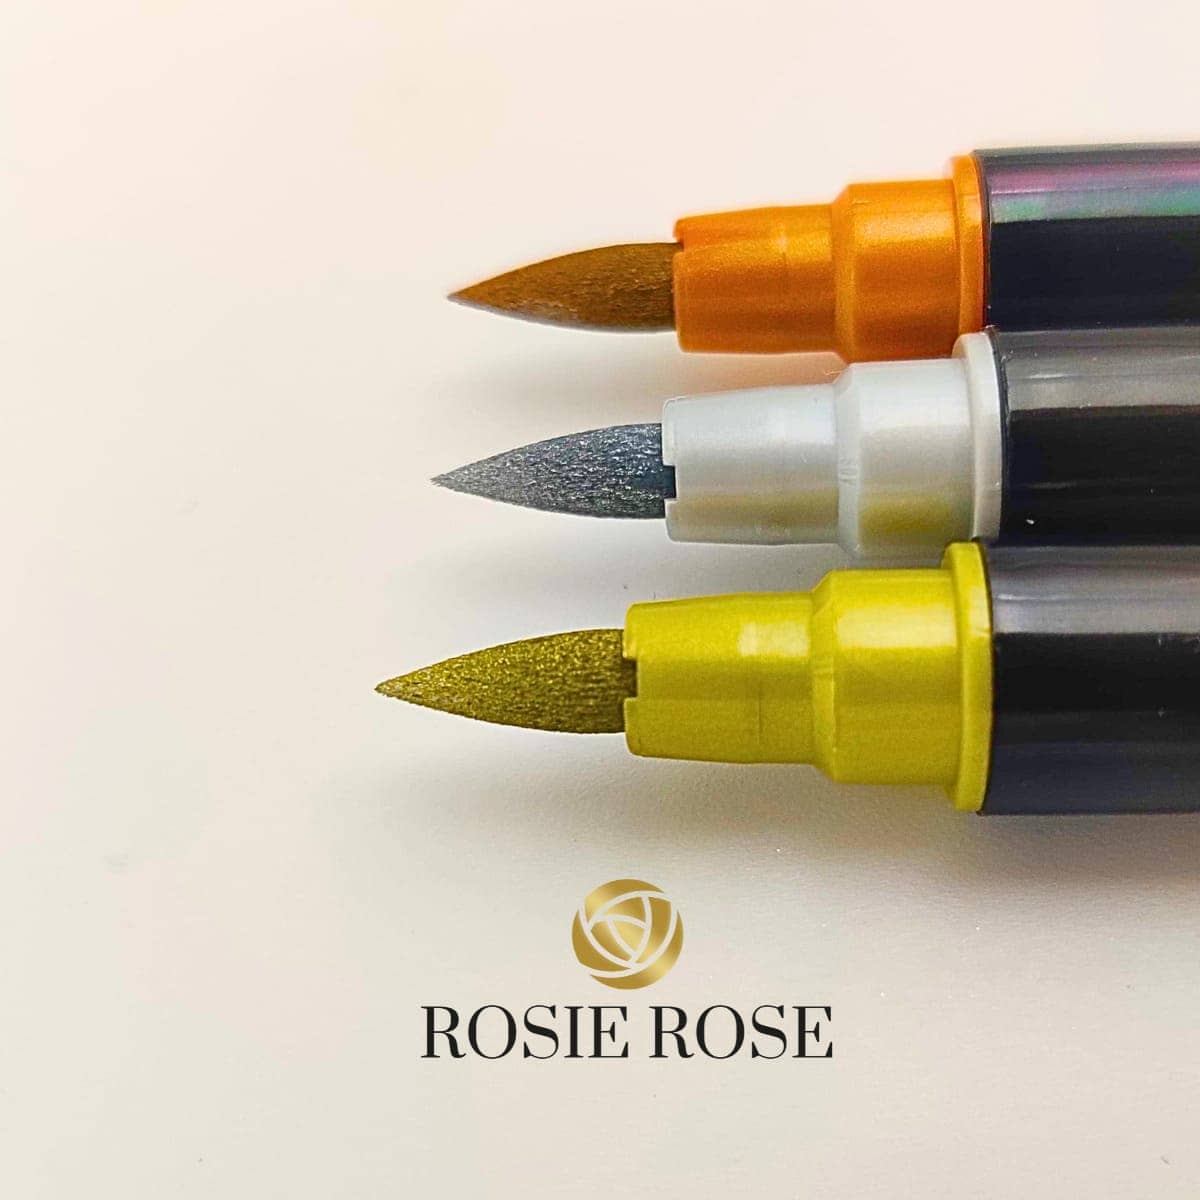 Bringen Sie Glanz in Ihre Backkreationen mit den essbaren Stiften von ROSIE ROSE! Unsere Stifte überzeugen nicht nur durch ihre lebensmittelechten Farben, sondern auch durch ihren edlen Glanz, der Ihren Kuchen und Torten eine besondere Note verleiht. Egal ob für besondere Anlässe oder den täglichen Genuss - mit unseren Stiften setzen Sie Ihre Gebäcke gekonnt in Szene.